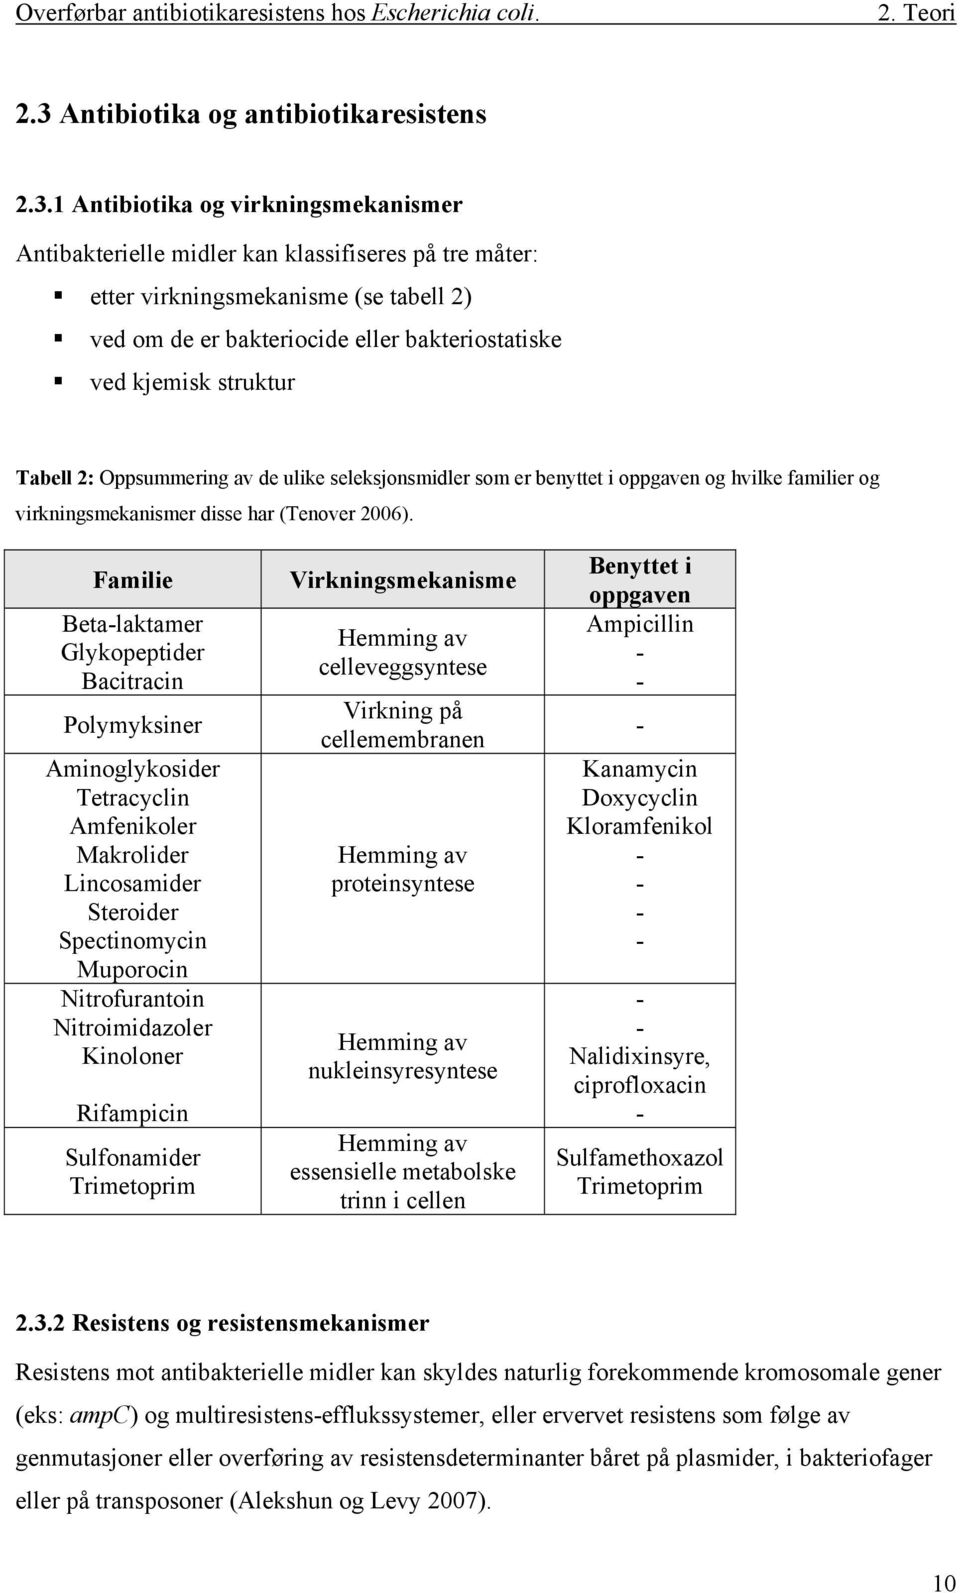 1 Antibiotika og virkningsmekanismer Antibakterielle midler kan klassifiseres på tre måter: etter virkningsmekanisme (se tabell 2) ved om de er bakteriocide eller bakteriostatiske ved kjemisk